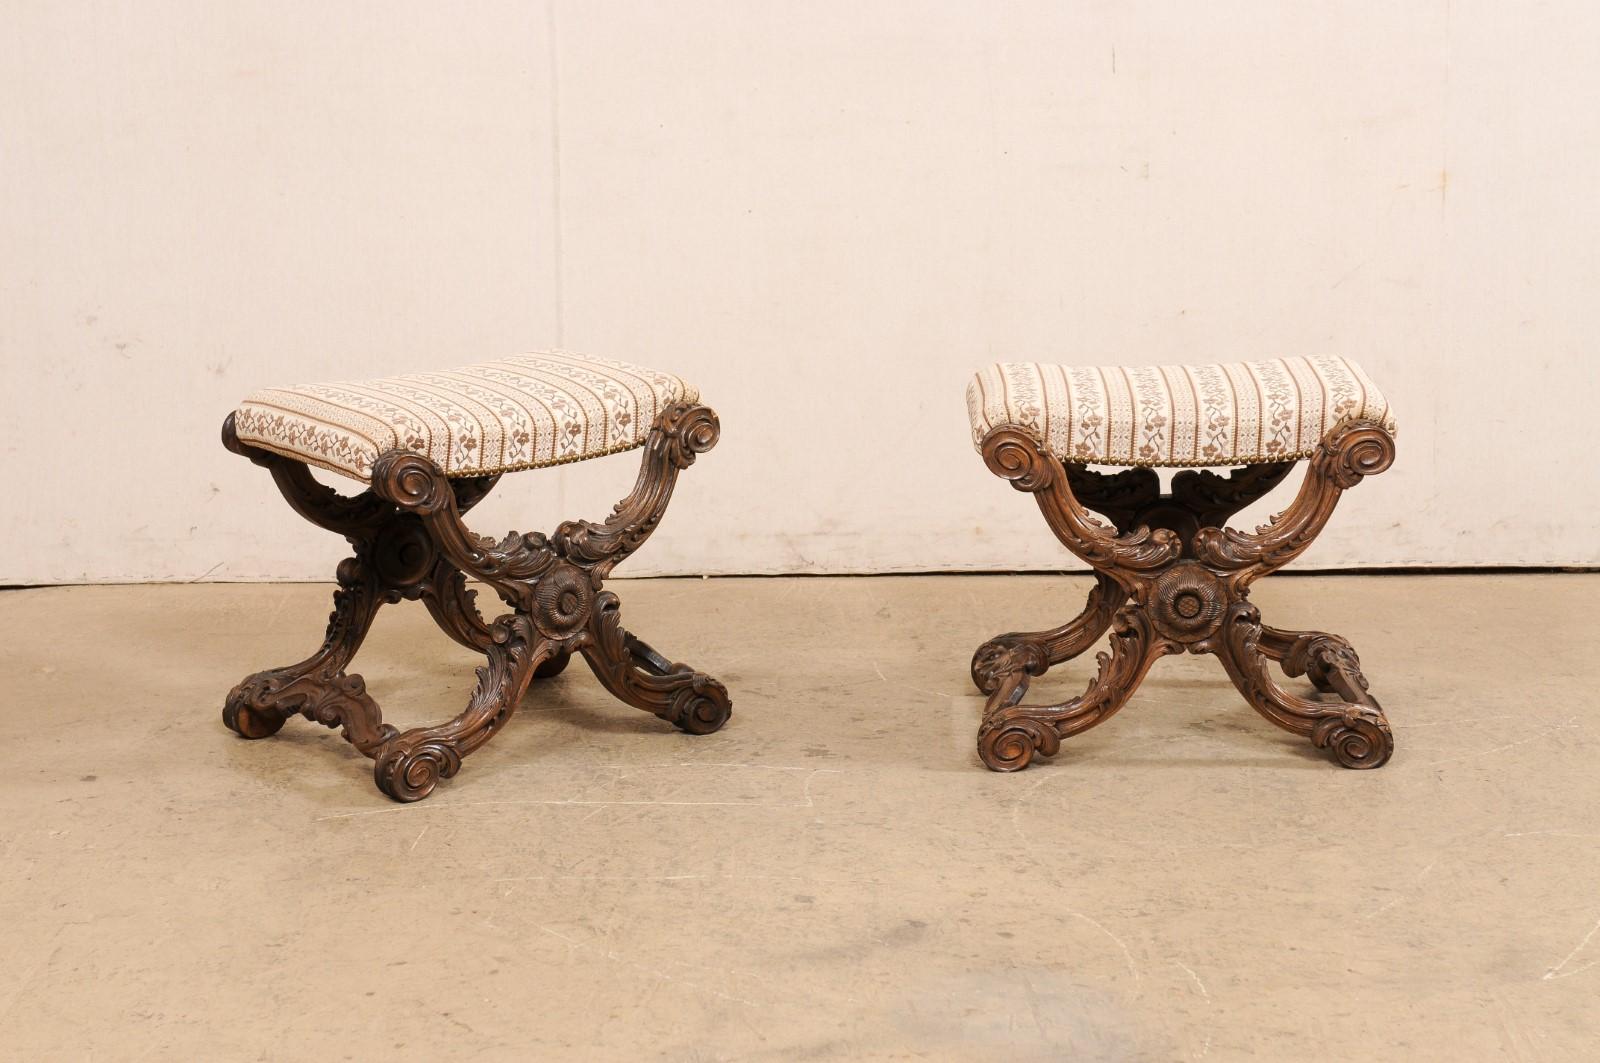 Ein französisches Paar kunstvoll geschnitzter und gepolsterter Holzhocker aus dem 19. Jahrhundert. Diese antiken Hocker aus Frankreich haben jeweils rechteckige, gepolsterte Sitze, die auf aufwendig geschnitzten Holzrahmen mit Akanthusblättern und